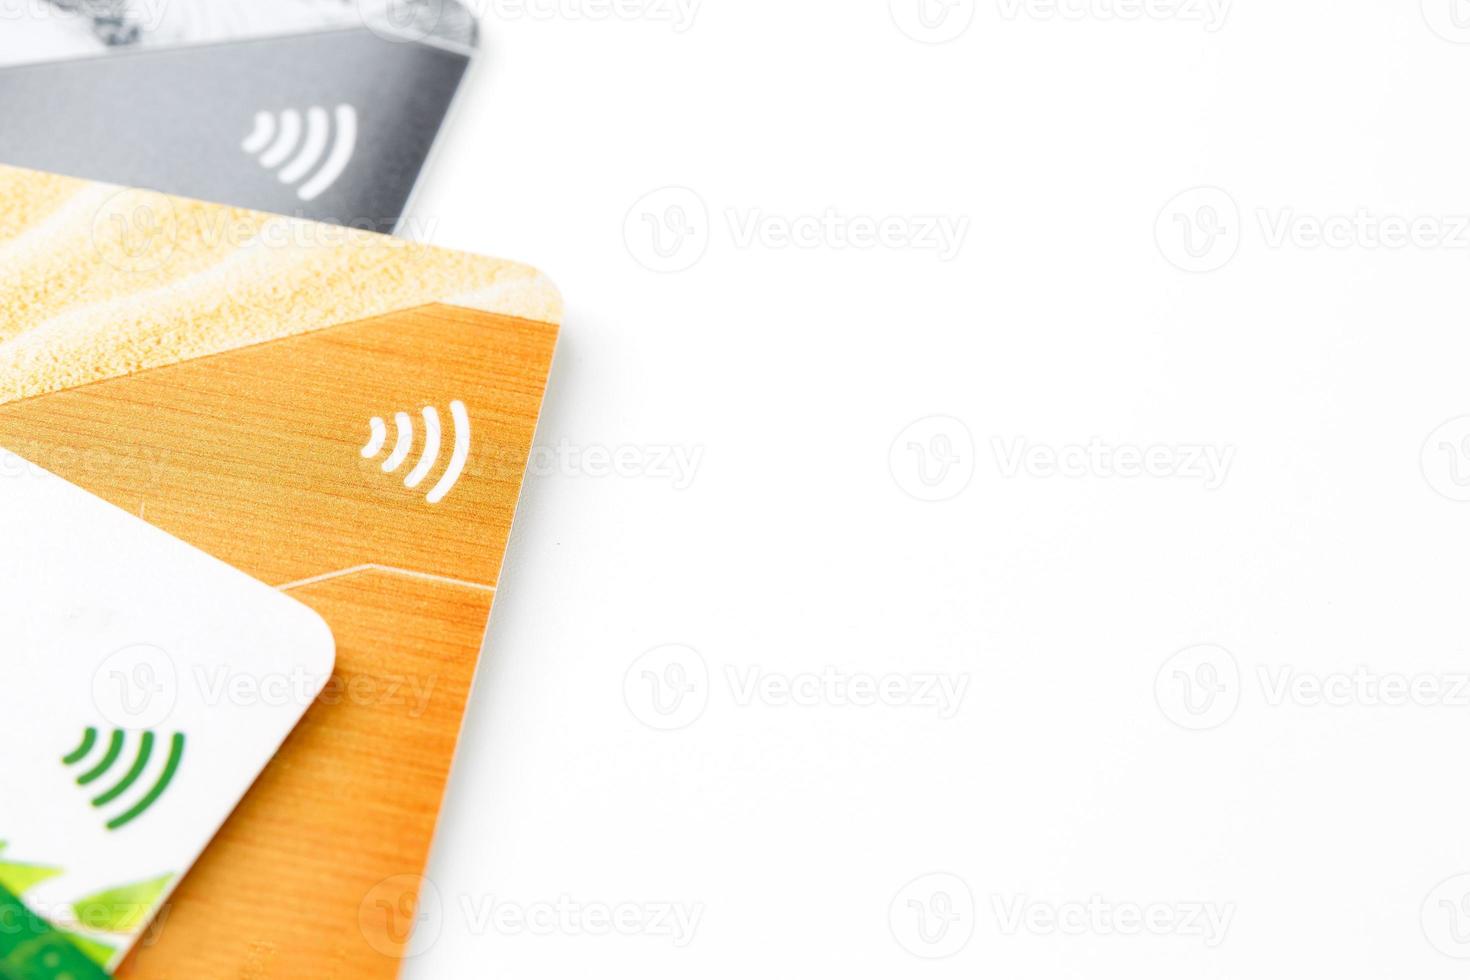 Kreditkarten mit kontaktloser Zahlung. Stapel von Kreditkarten auf weißem, isoliertem Hintergrund foto